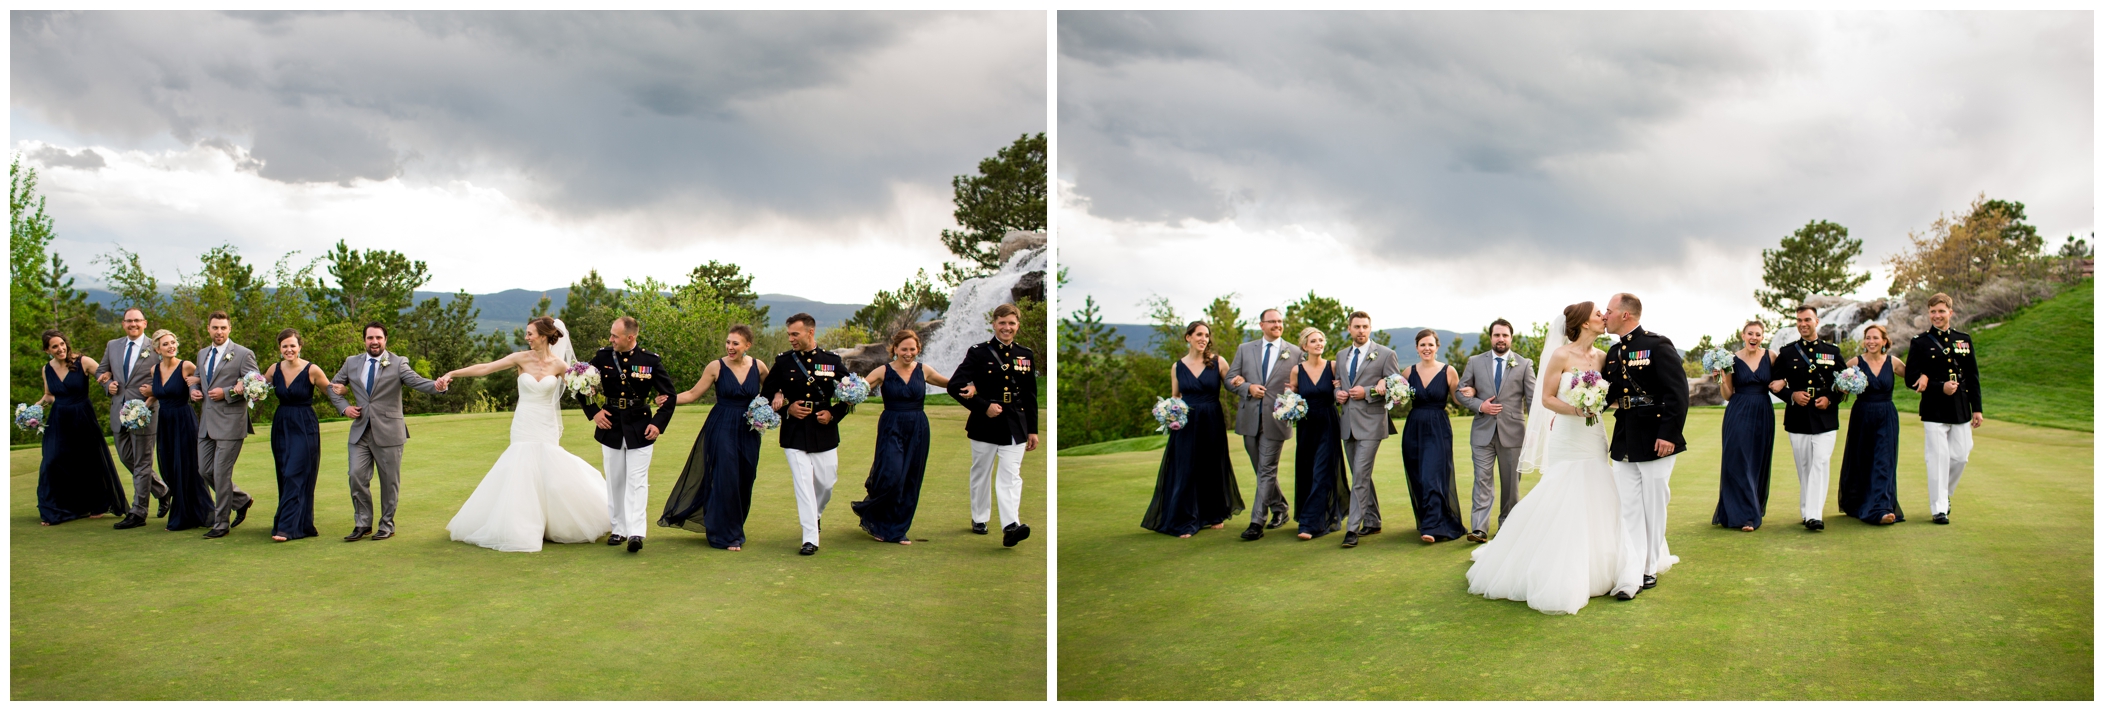 Colorado wedding photos at Sanctuary Golf Course